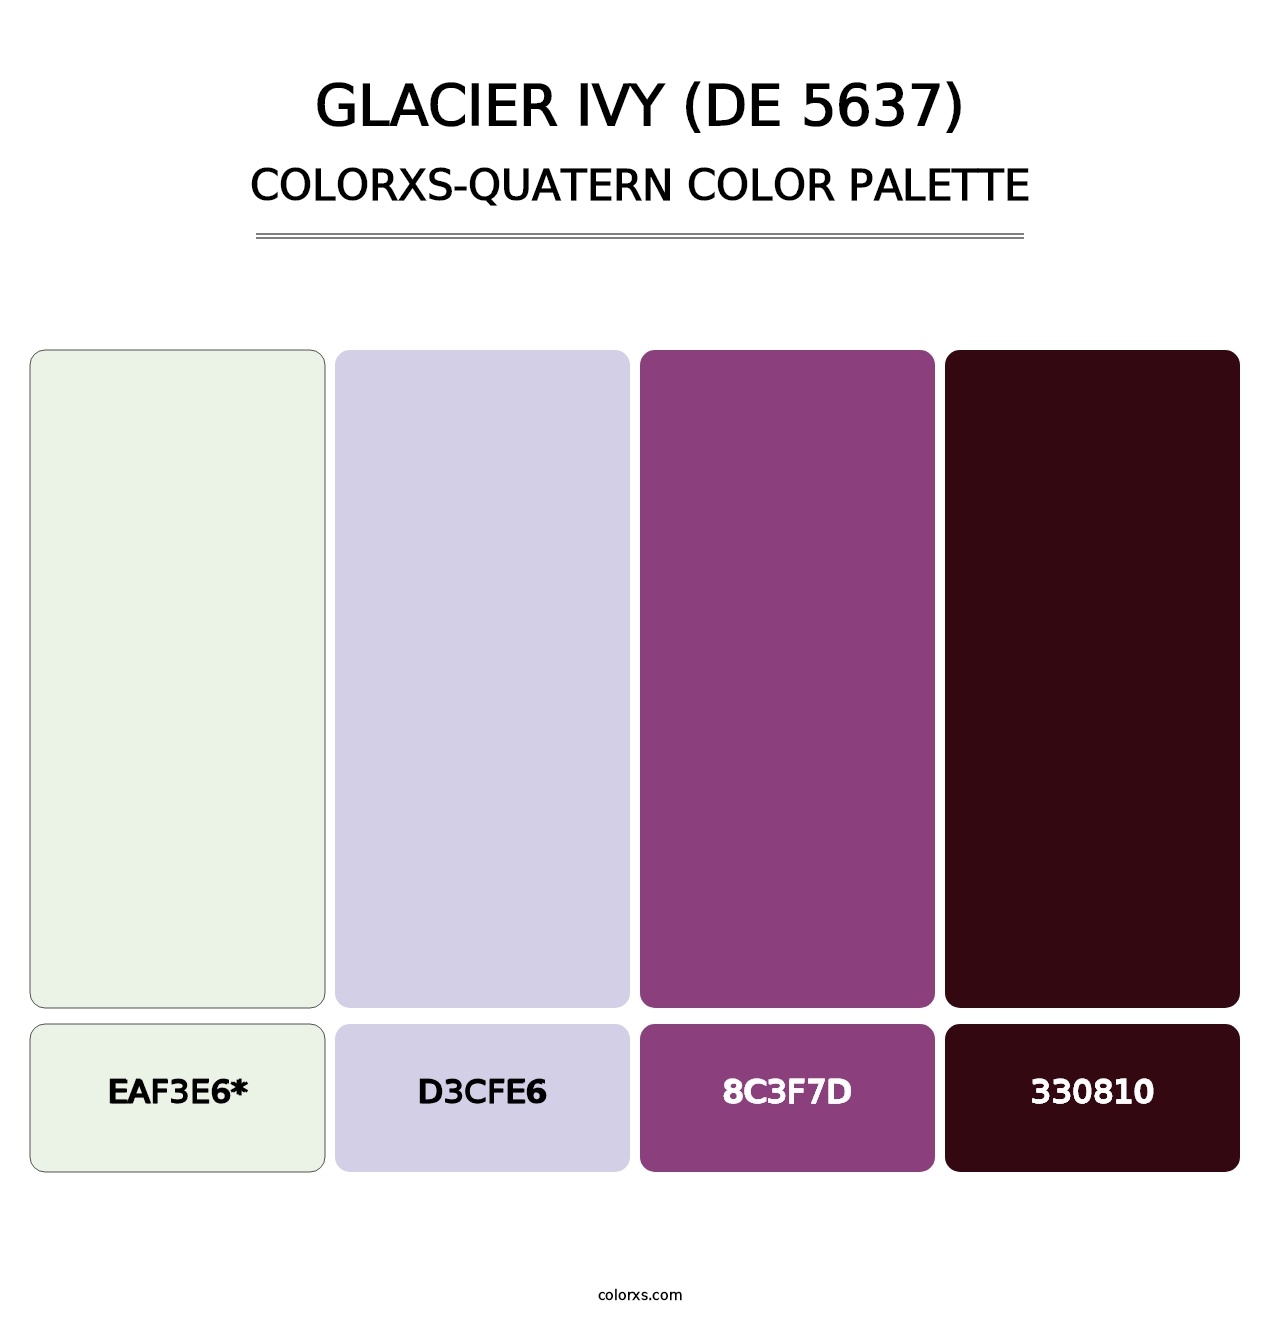 Glacier Ivy (DE 5637) - Colorxs Quatern Palette